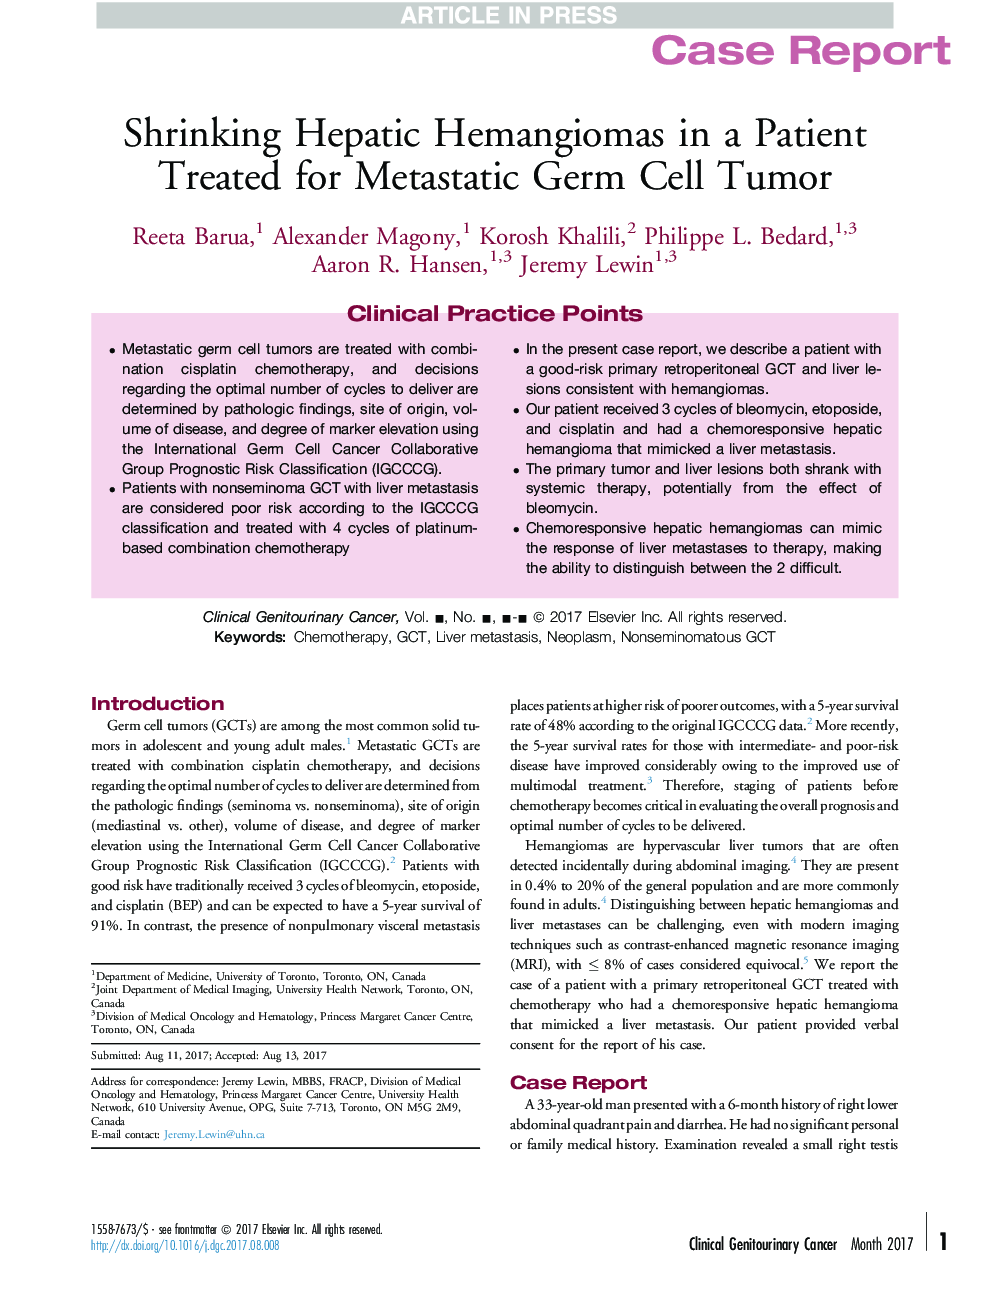 کاهش حنجروی کبدی در بیماران درمان شده برای تومور سلول های ژرمونت متاستاتیک 